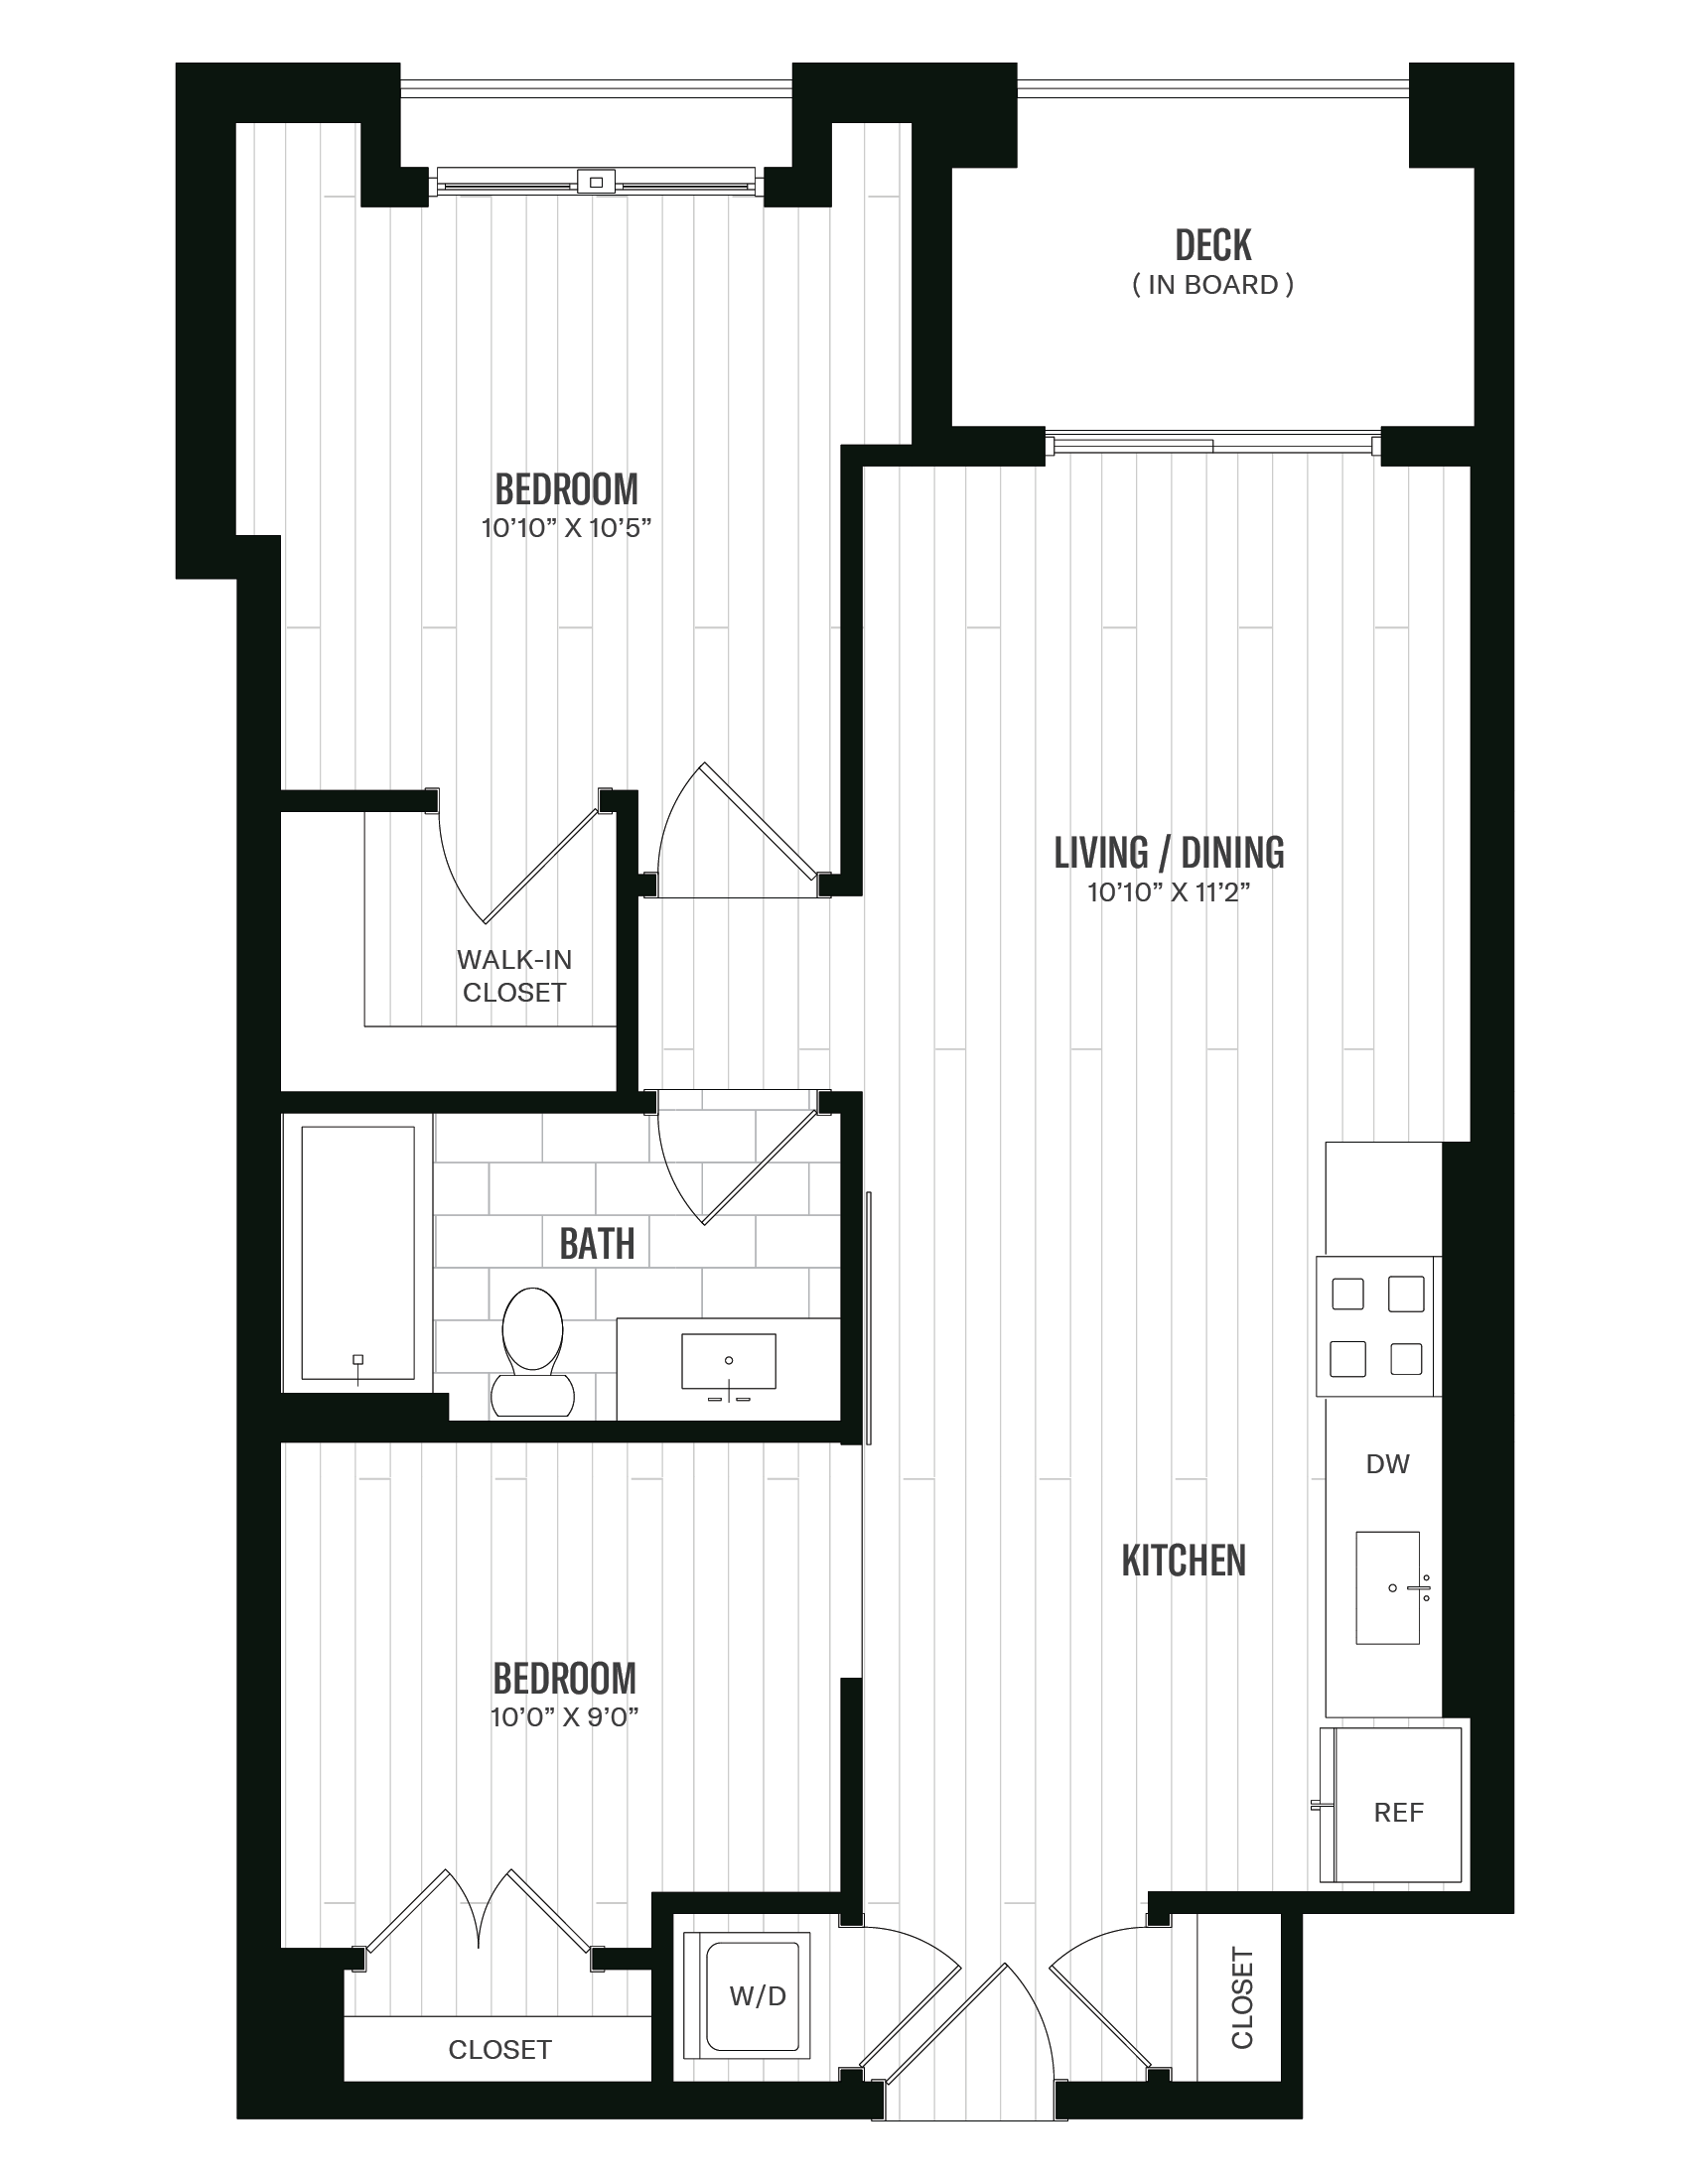 Floorplan image of unit 344